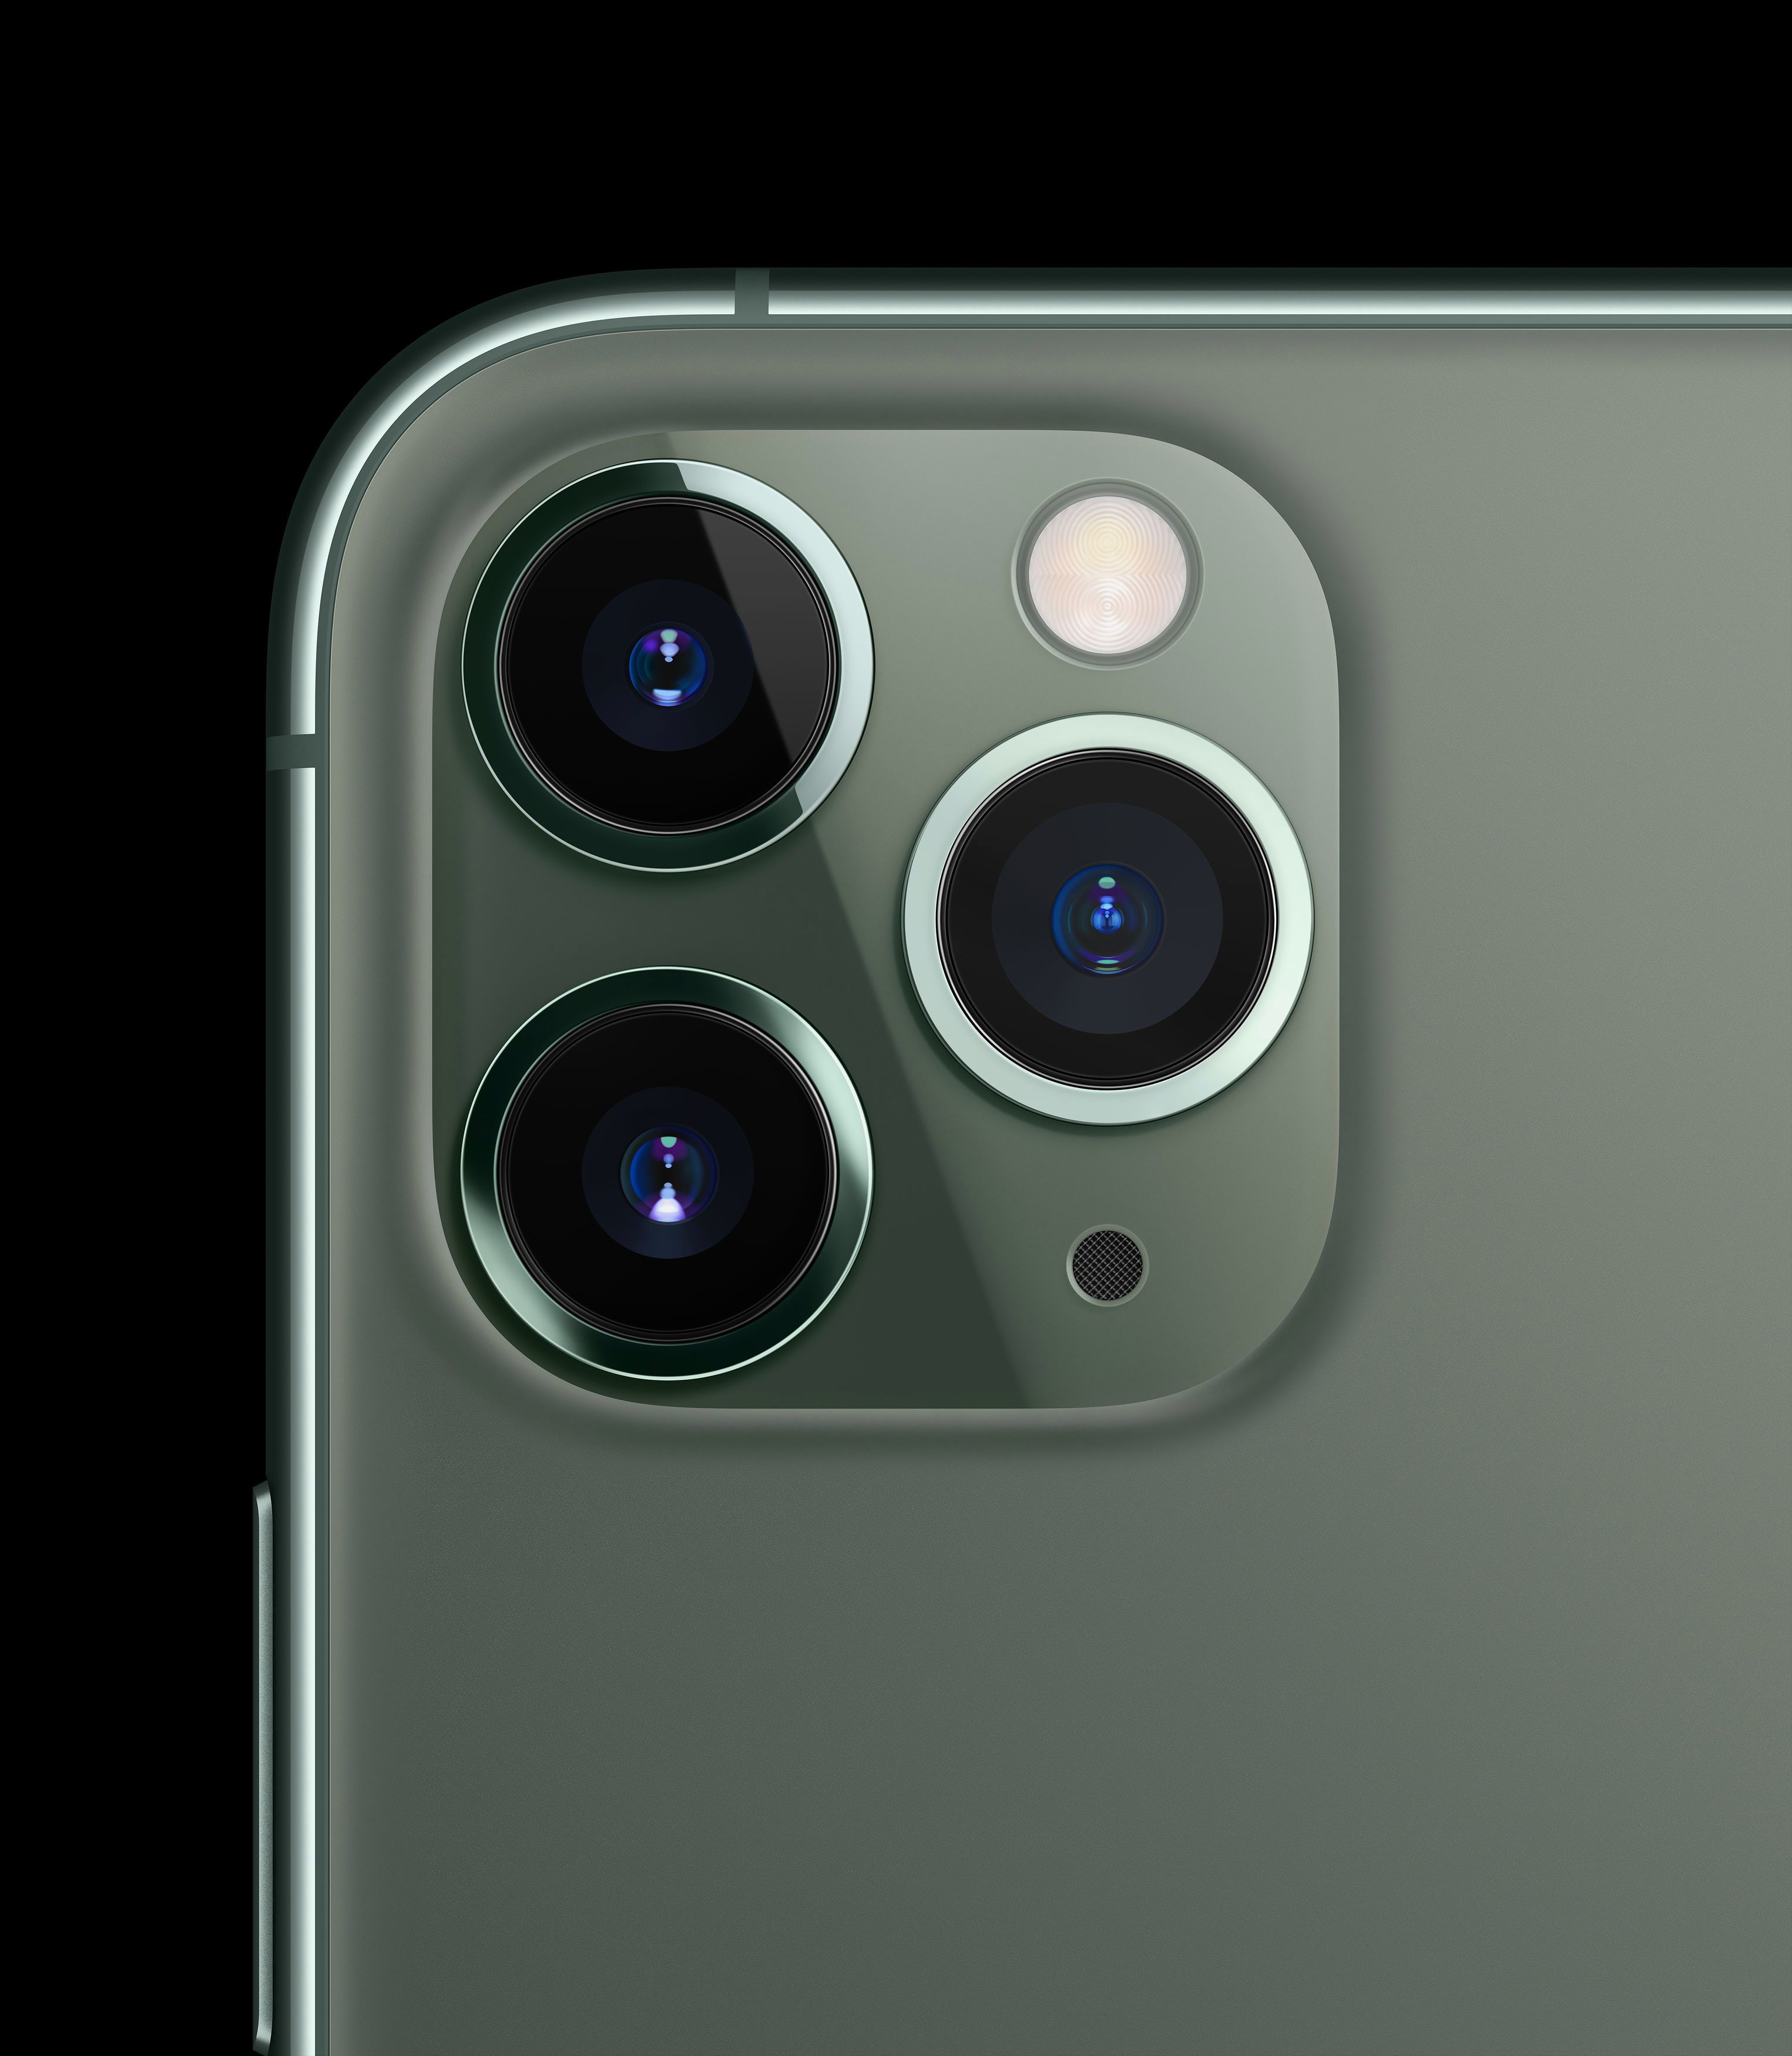  Desain iPhone 11 Pro memiliki kamera telefoto 12 megapiksel, dengan aperture f / 2.0 yang lebih besar, panjang fokus 52mm, dan OIS juga